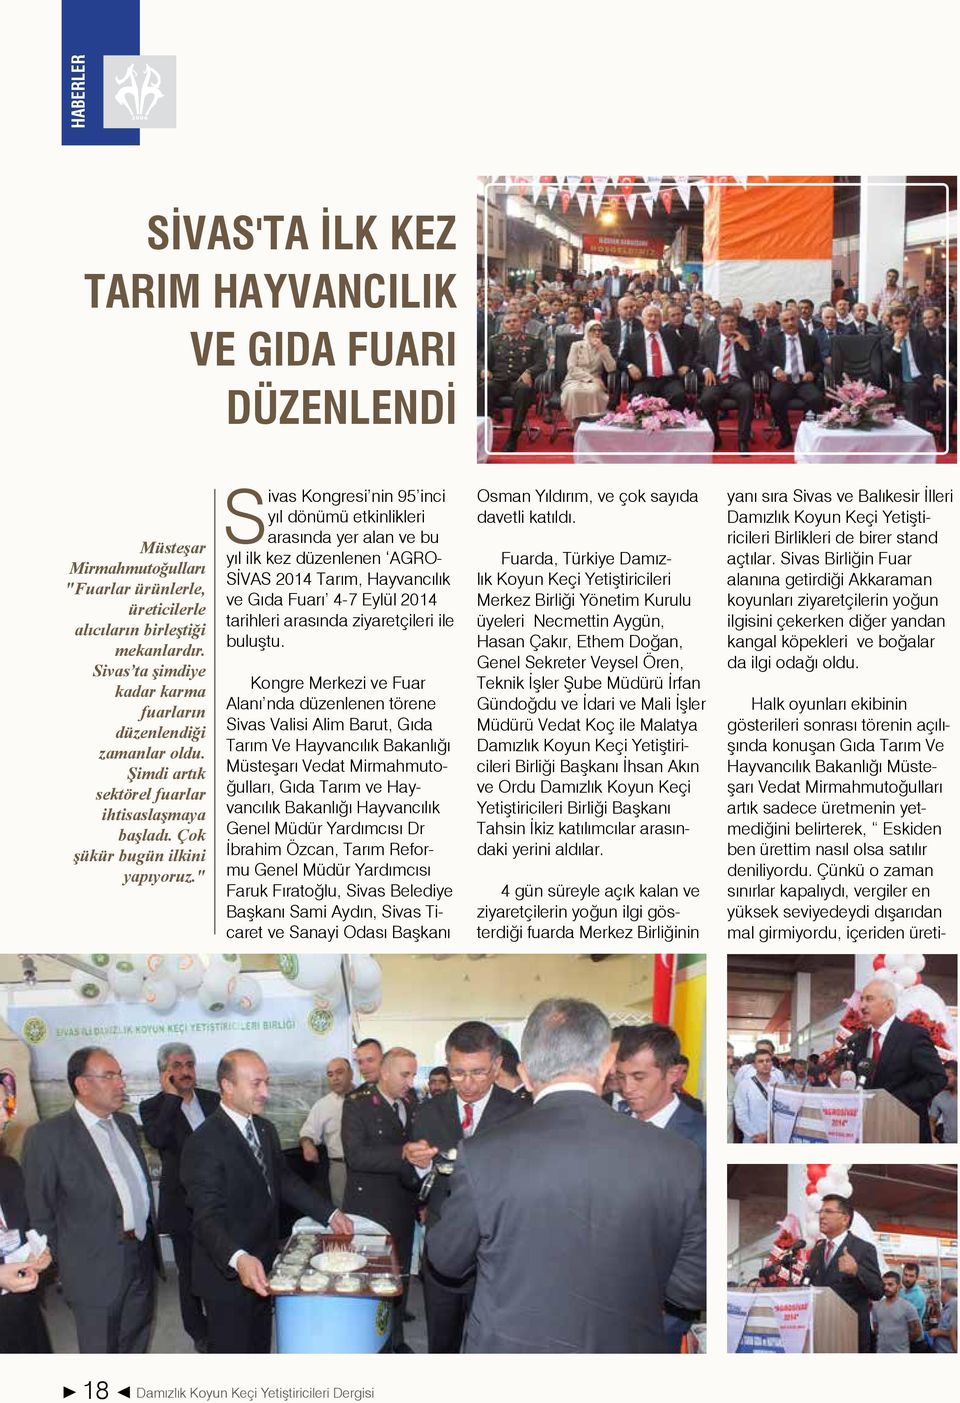 " Sivas Kongresi nin 95 inci yıl dönümü etkinlikleri arasında yer alan ve bu yıl ilk kez düzenlenen AGRO- SİVAS 2014 Tarım, Hayvancılık ve Gıda Fuarı 4-7 Eylül 2014 tarihleri arasında ziyaretçileri